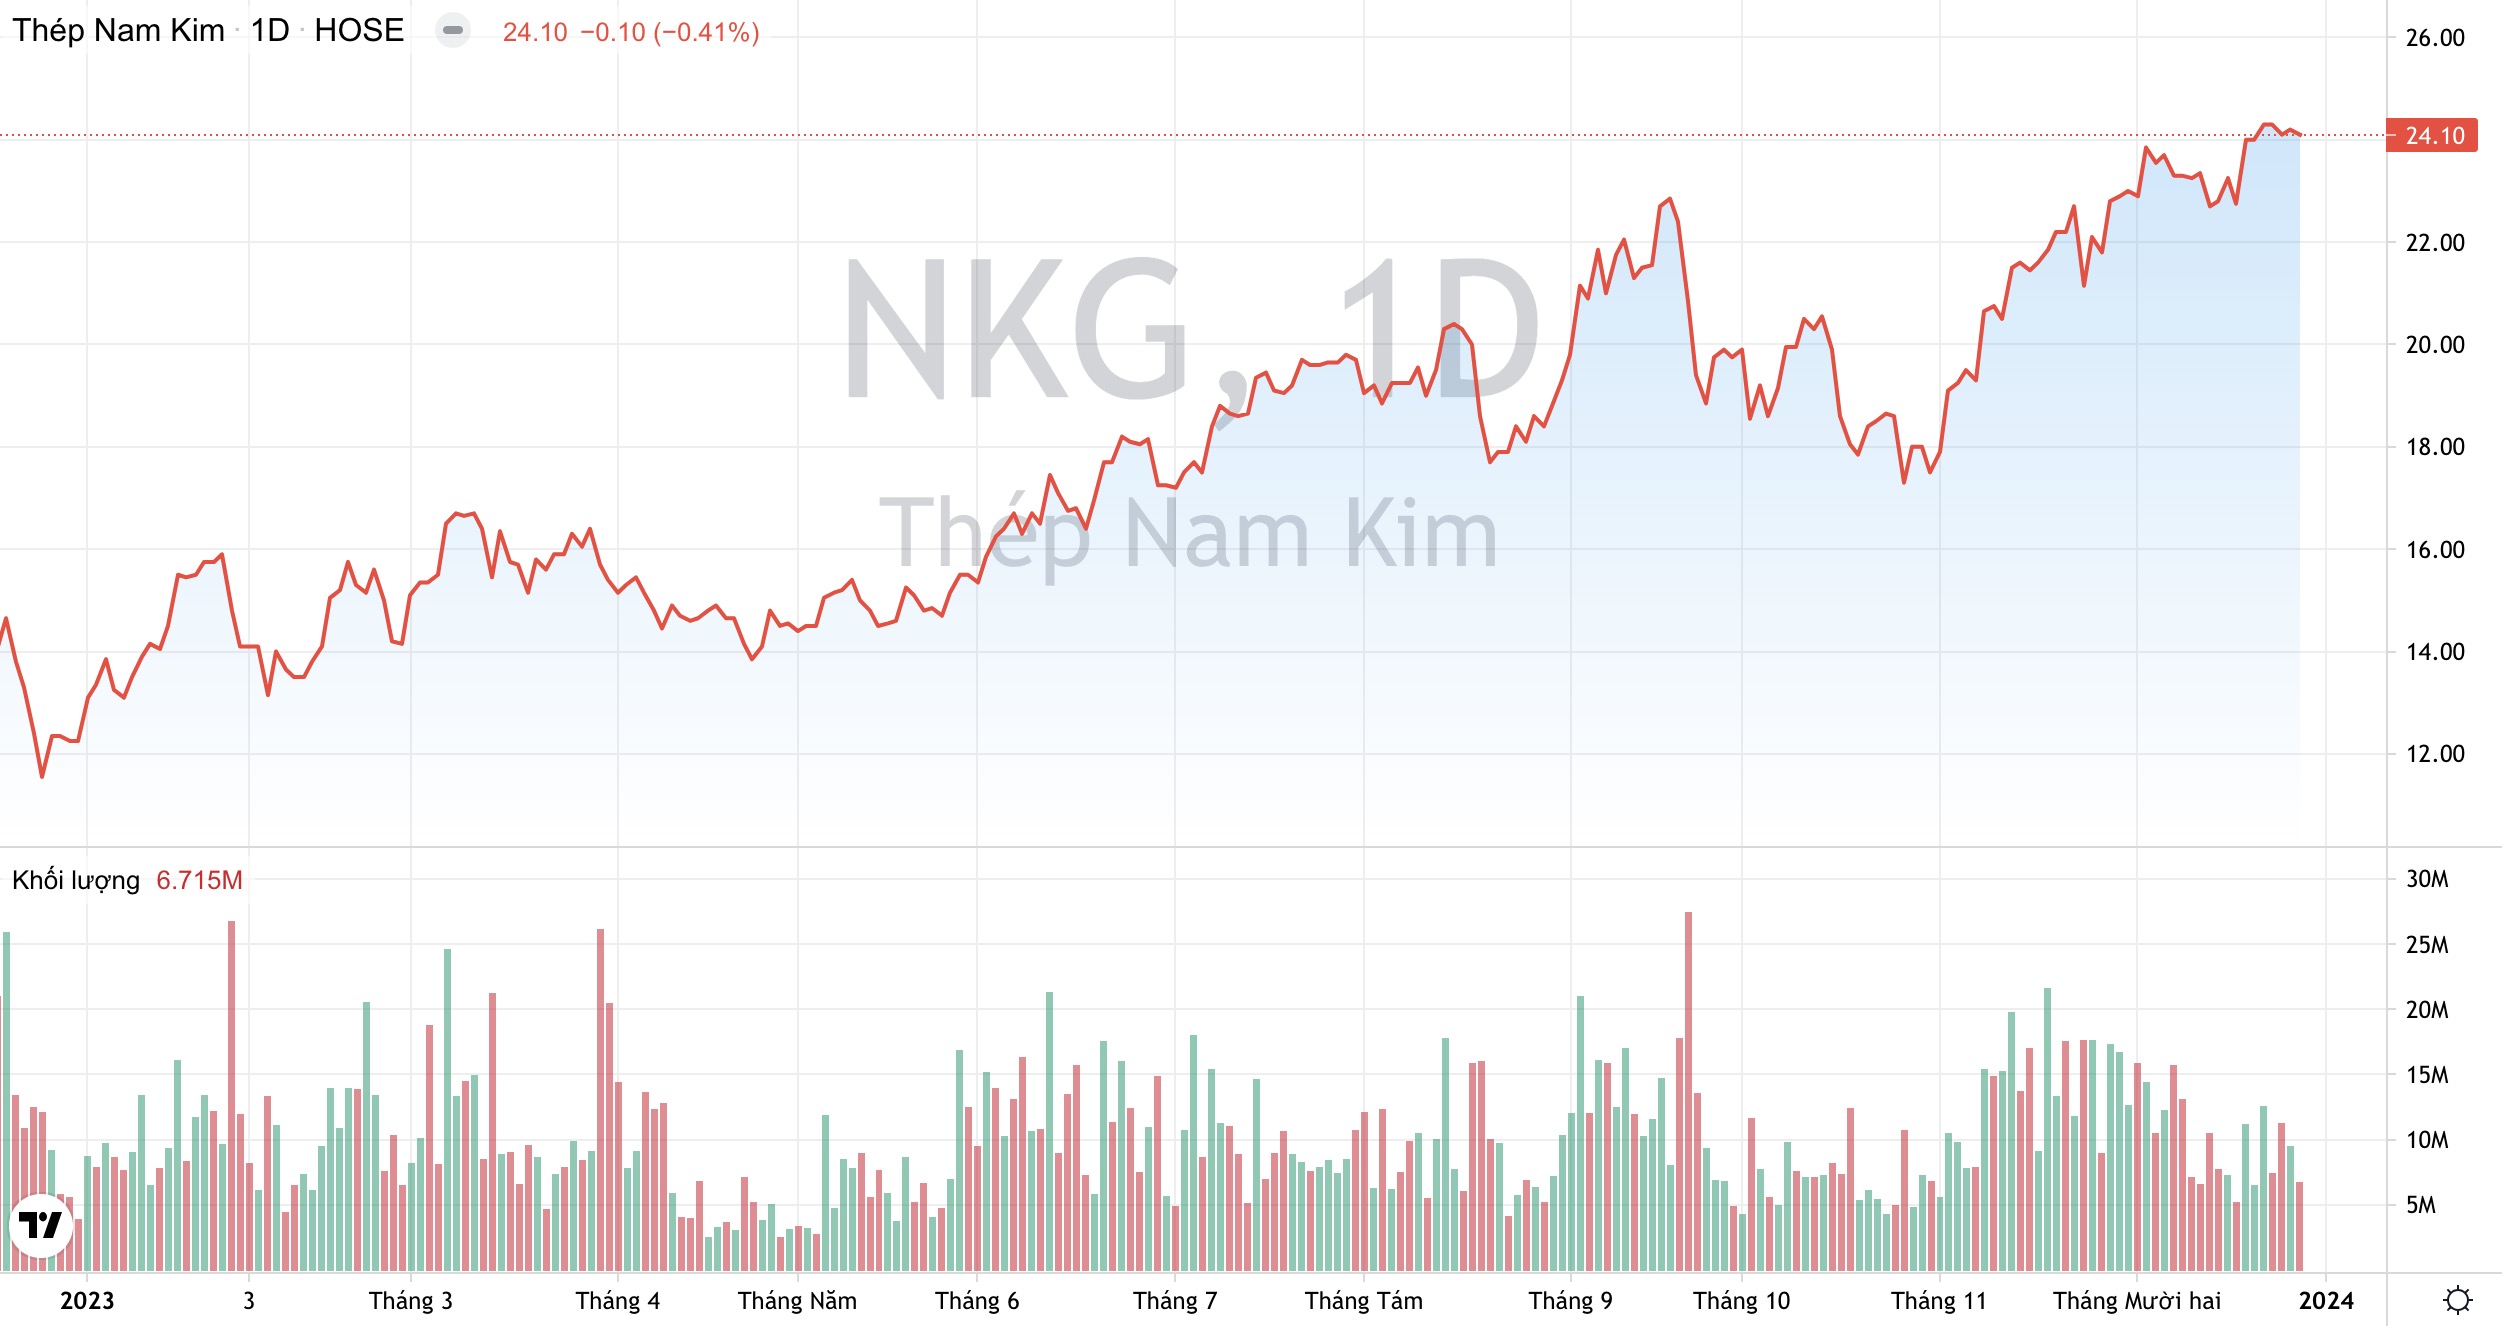 Dừng đầu tư vào Nhà máy Ống thép, Thép Nam Kim NKG muốn dồn lực cho mảng thép mạ cao cấp? 3